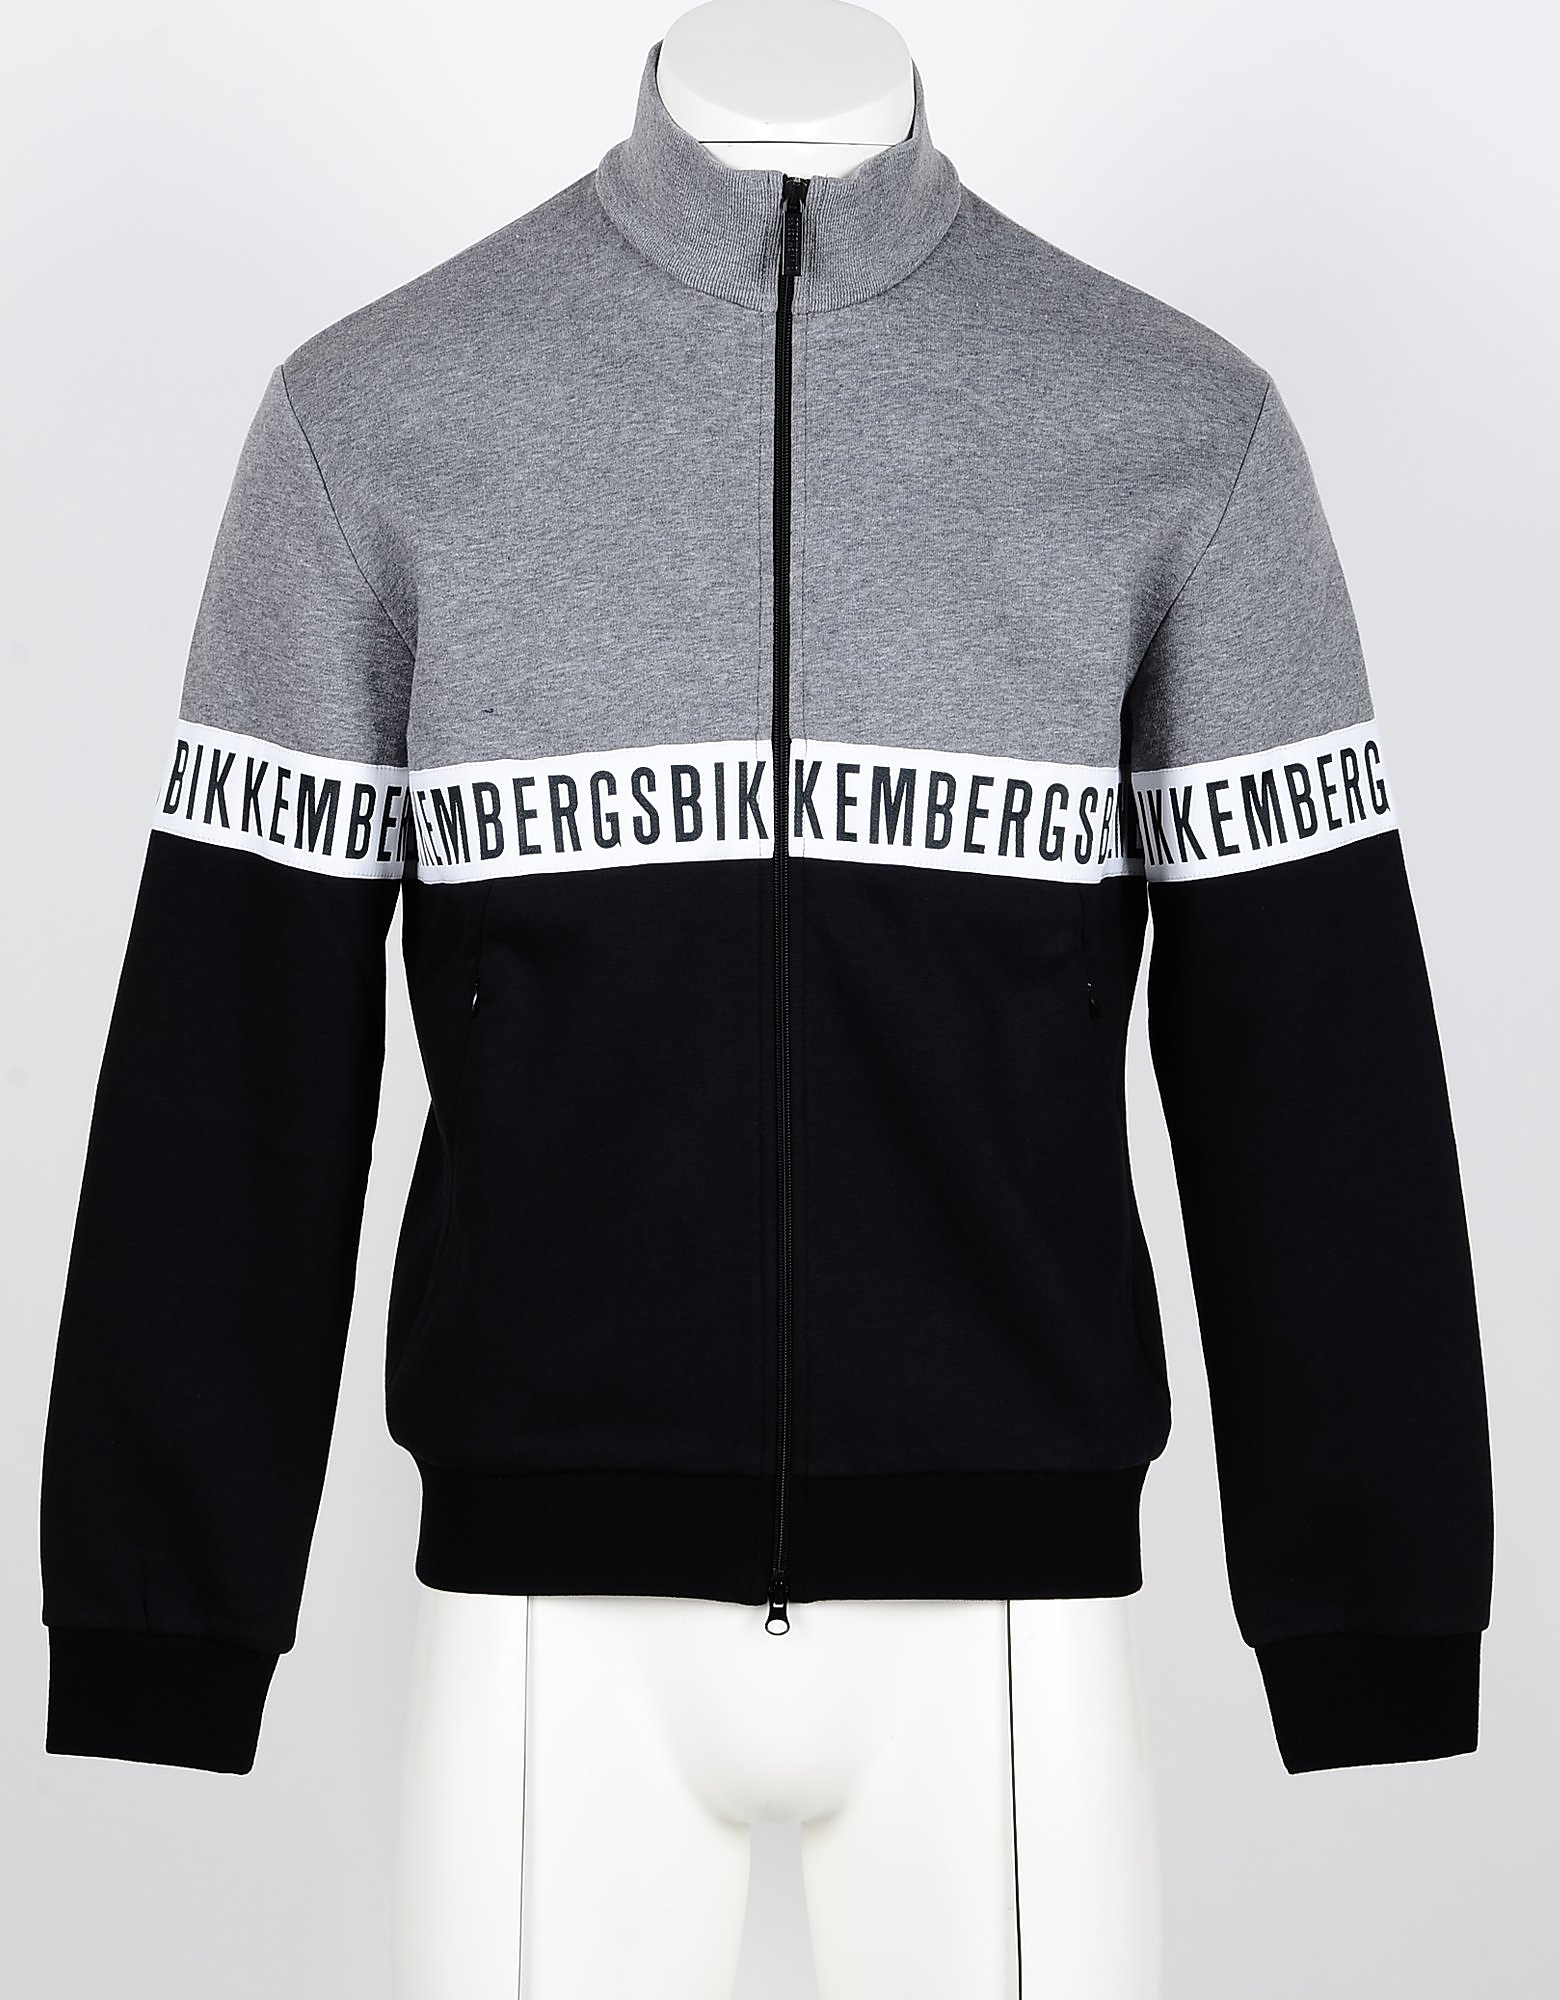 Bikkembergs Designer Sweatshirts, Black/Gray Color Block Cotton Zip-Up Men's Sweatshirt